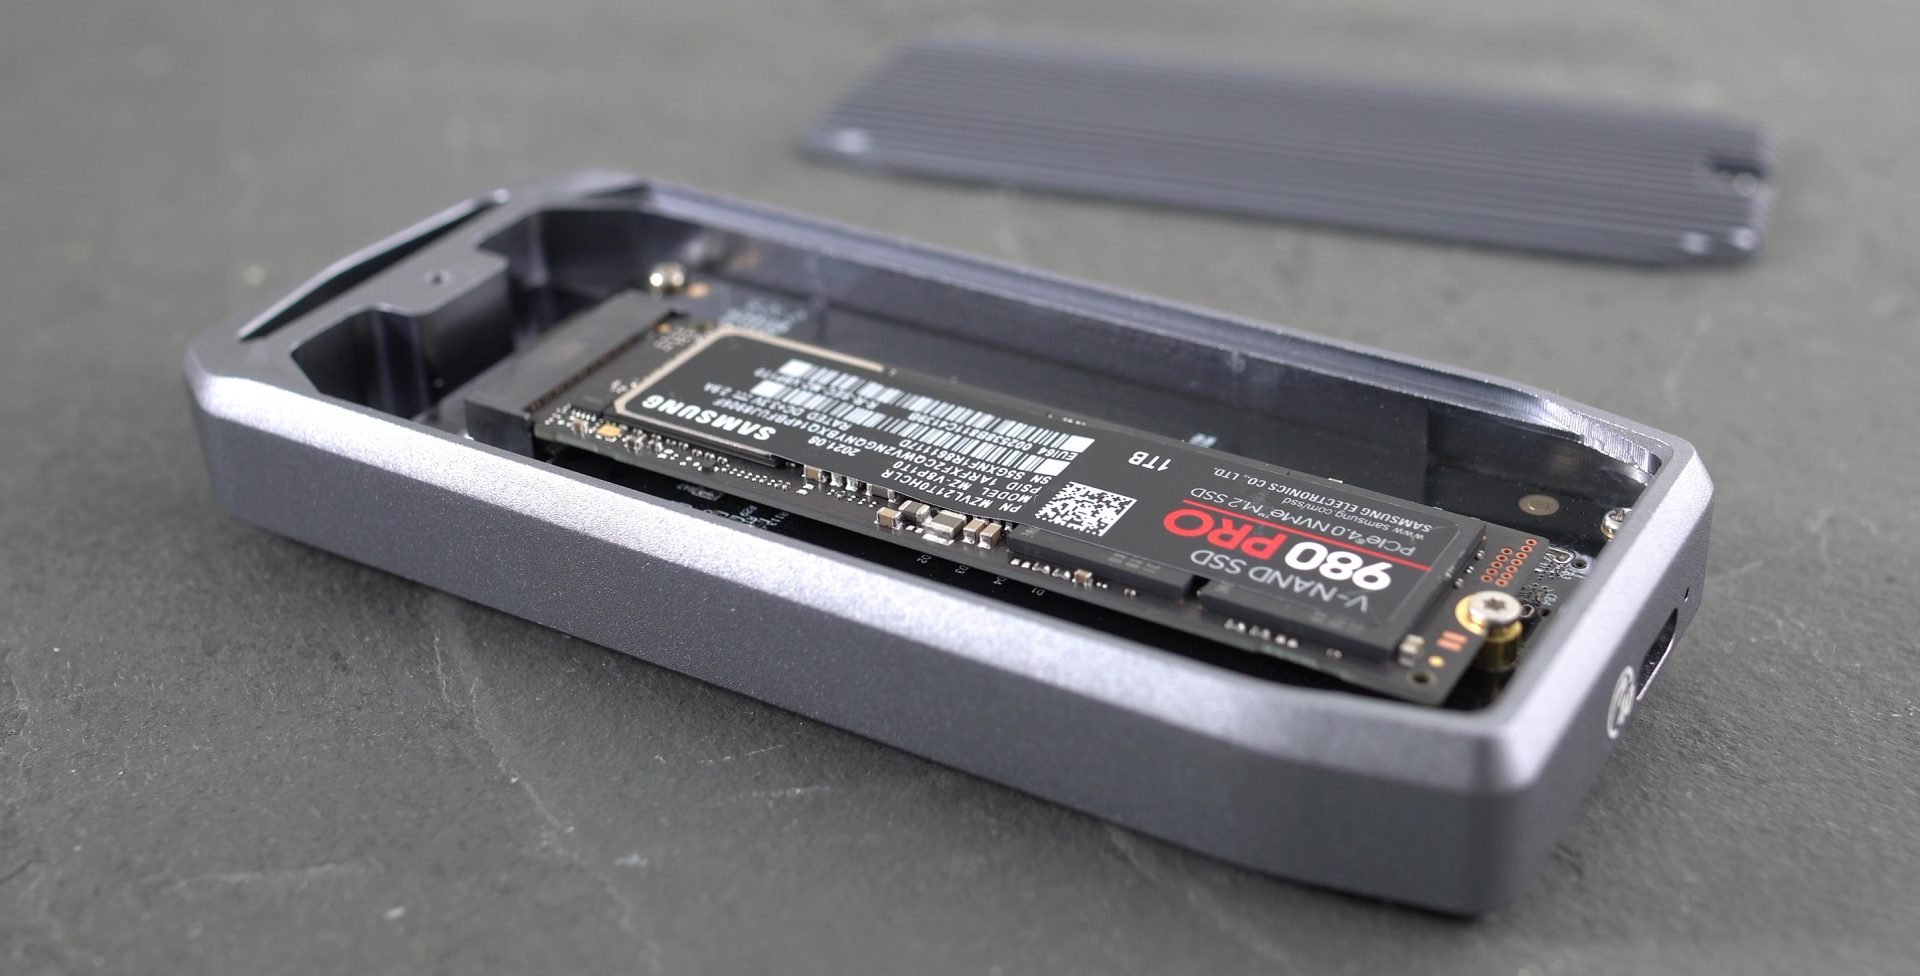 enestående brugerdefinerede Begrænsning Build the fastest portable SSD | Cameralabs